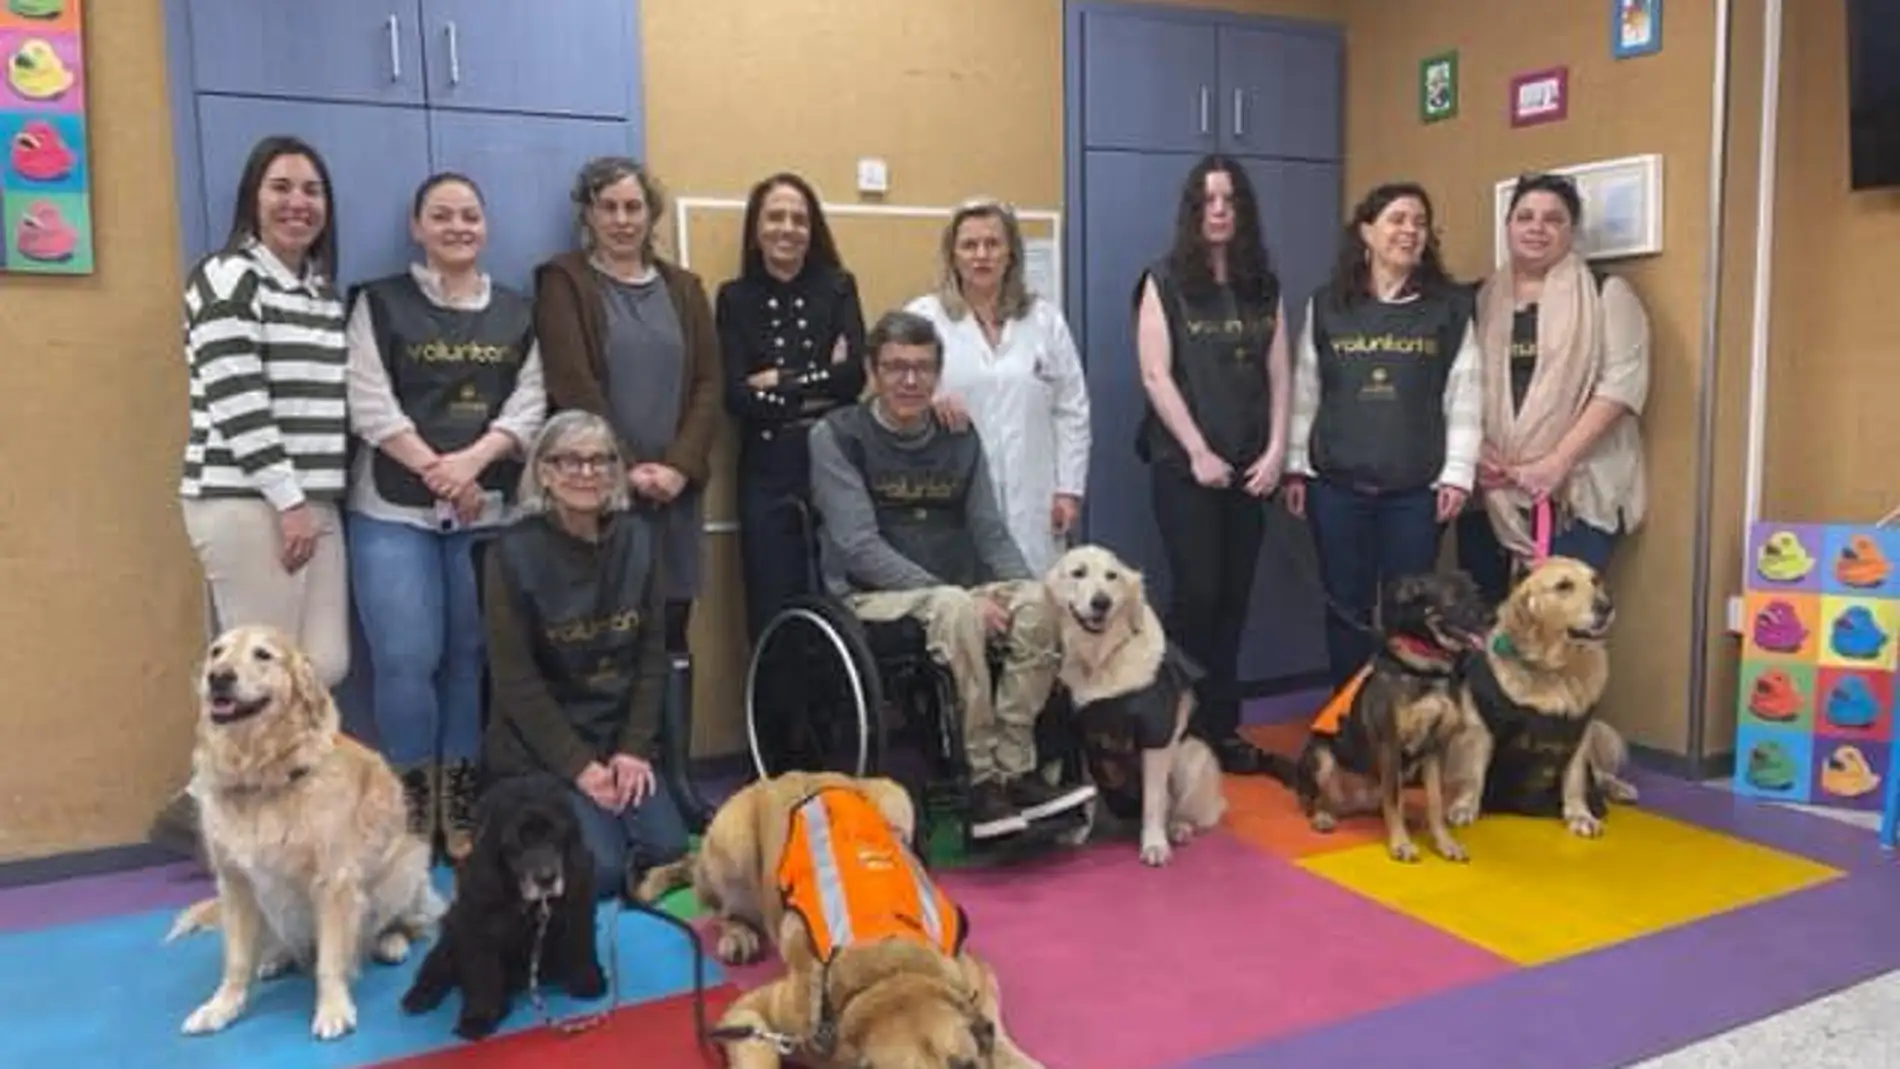 La Fundación Andrea incorpora en el Hospital Clínico de Santiago un nuevo servicio de terapia asistida con perros para apoyo de los niños ingresados.